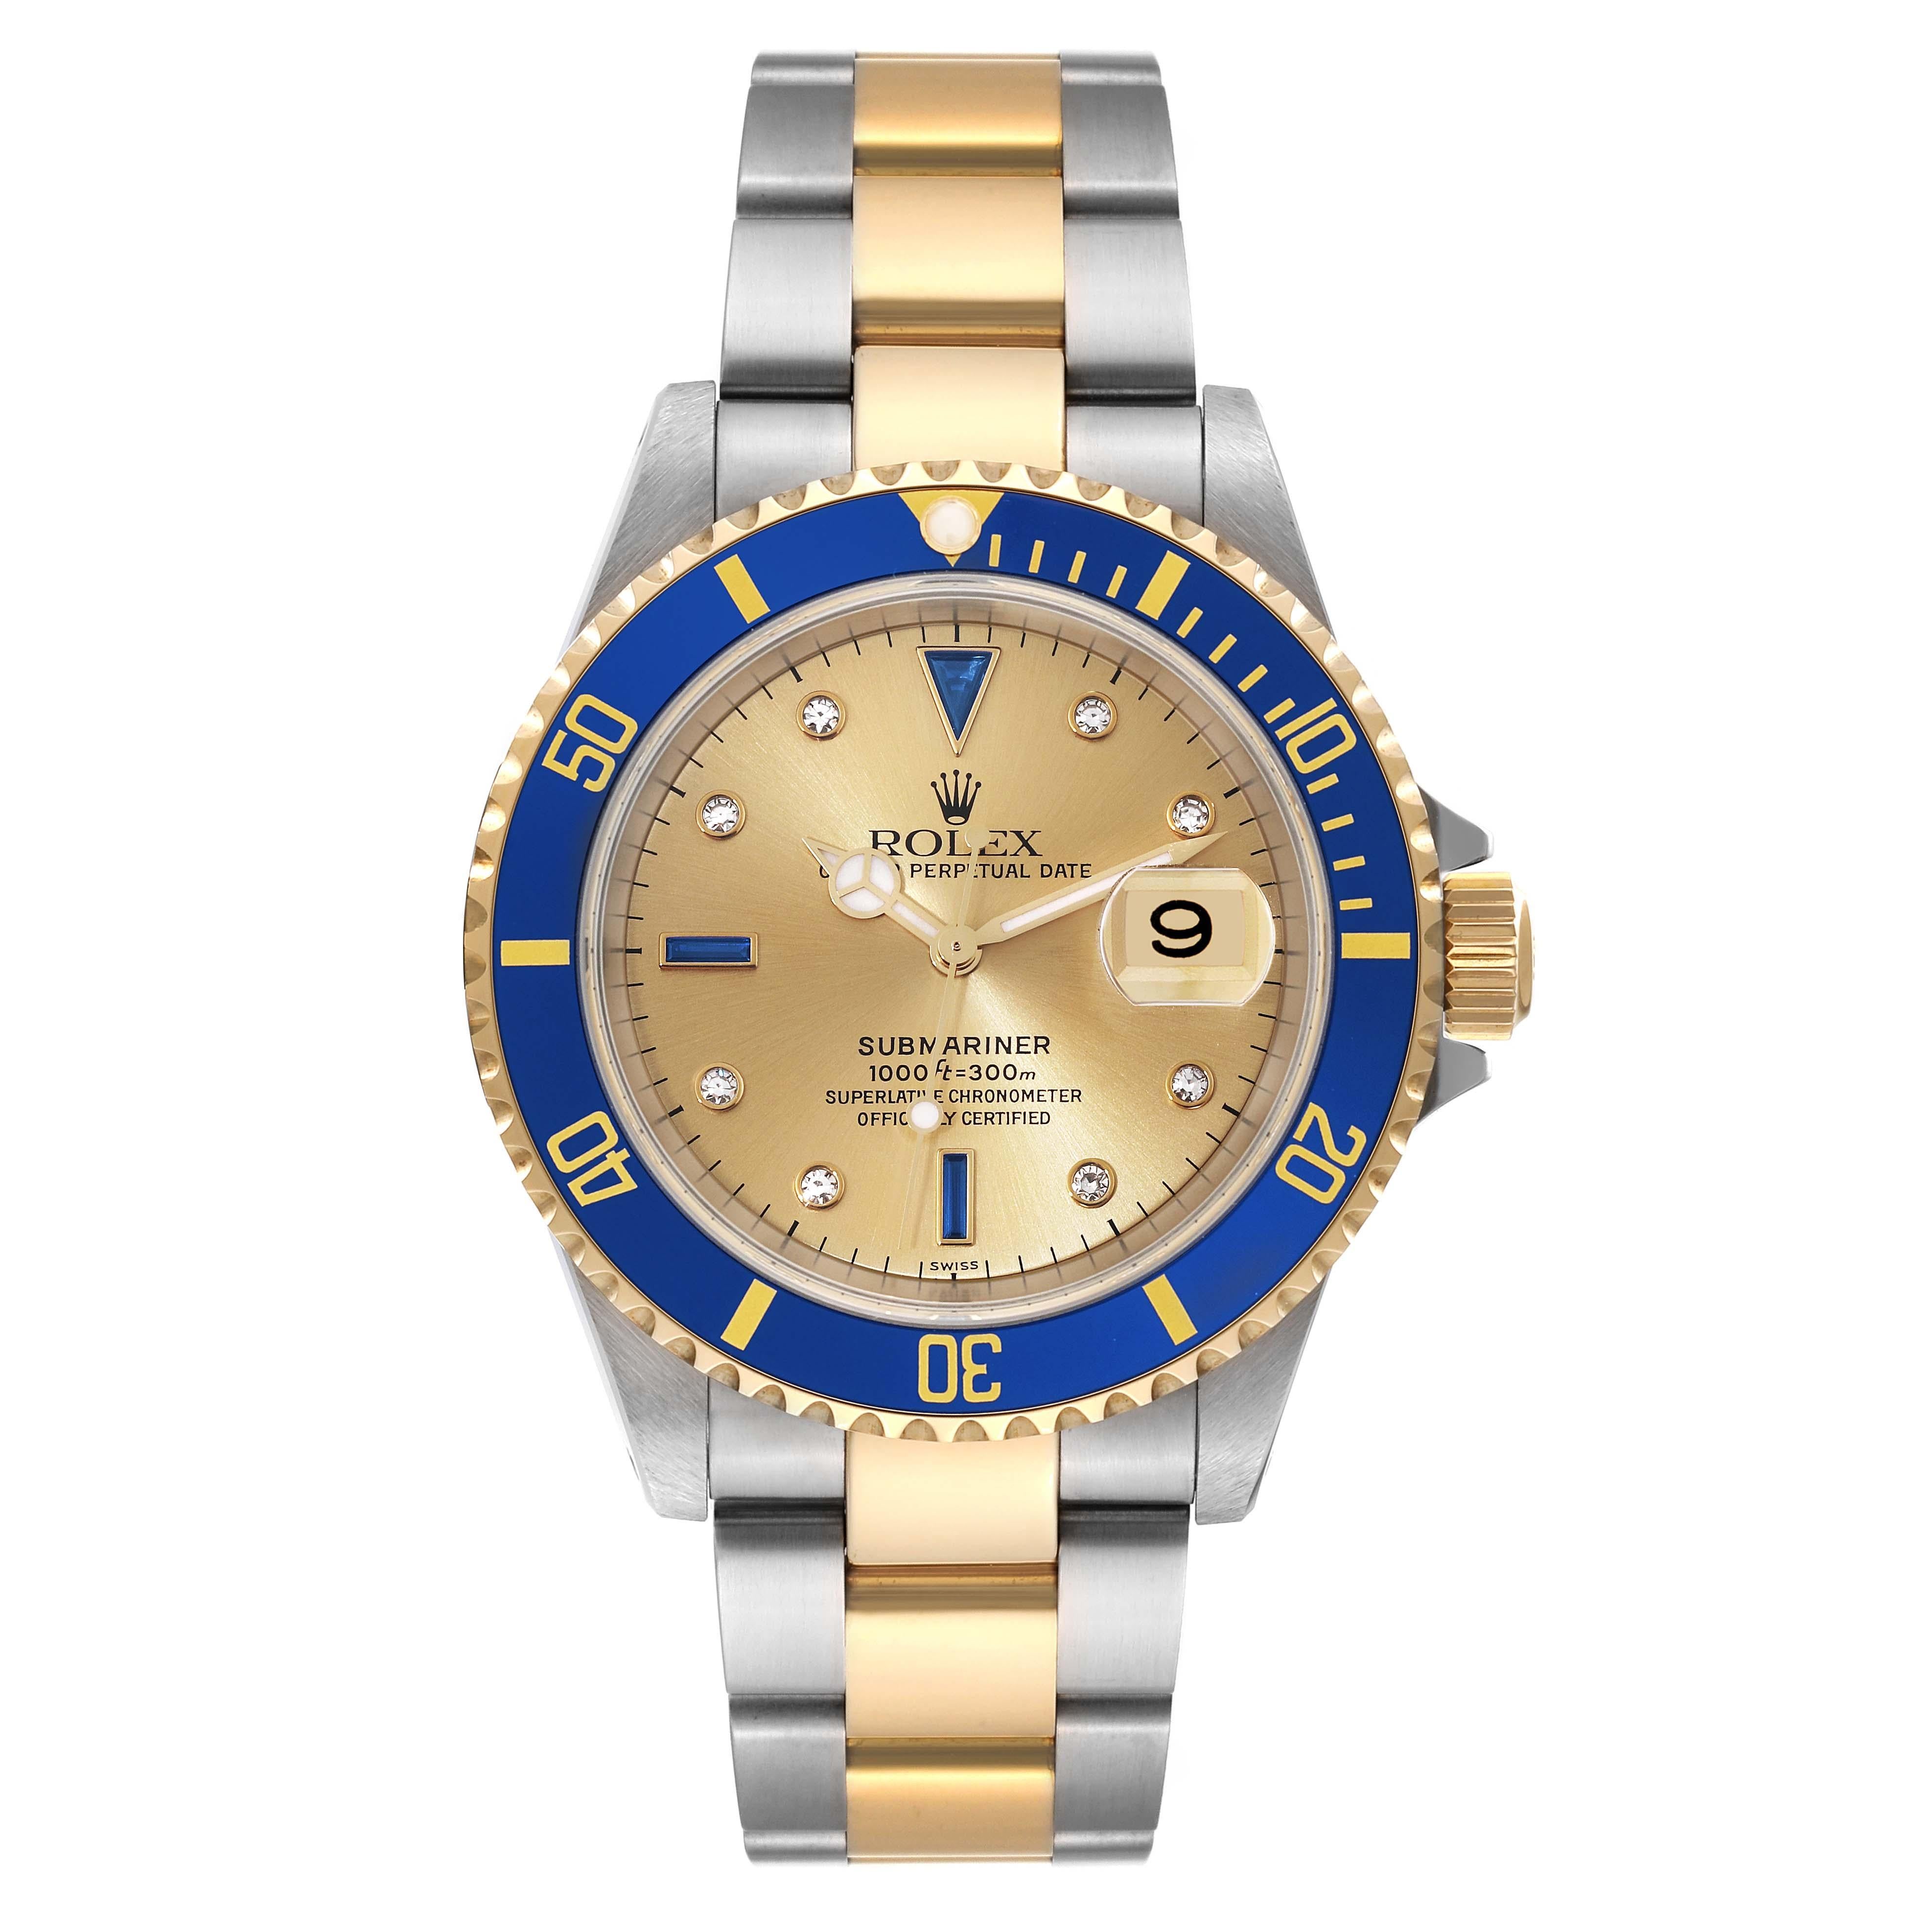 Rolex Submariner Stahl Gelbgold Diamant Serti Dial Uhr 16613 Ungetragene NOS. Offiziell zertifiziertes Chronometerwerk mit automatischem Aufzug. Gehäuse aus Edelstahl und 18 Karat Gelbgold mit einem Durchmesser von 40 mm. Rolex Logo auf der Krone.